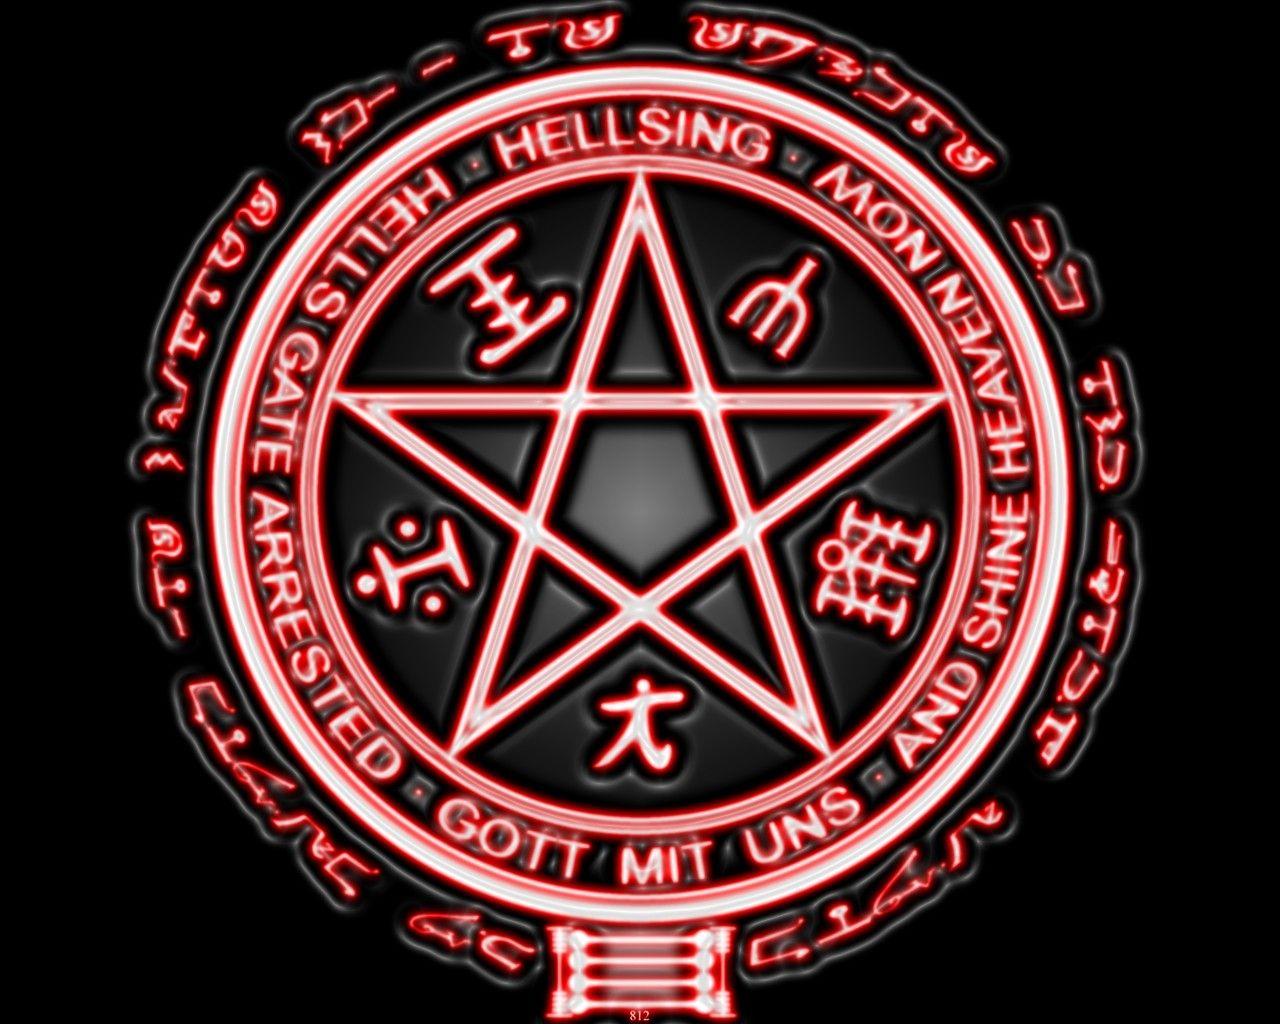 Hellsing Logo - Wallpaper : illustration, anime, Hellsing, logo, pattern, circle